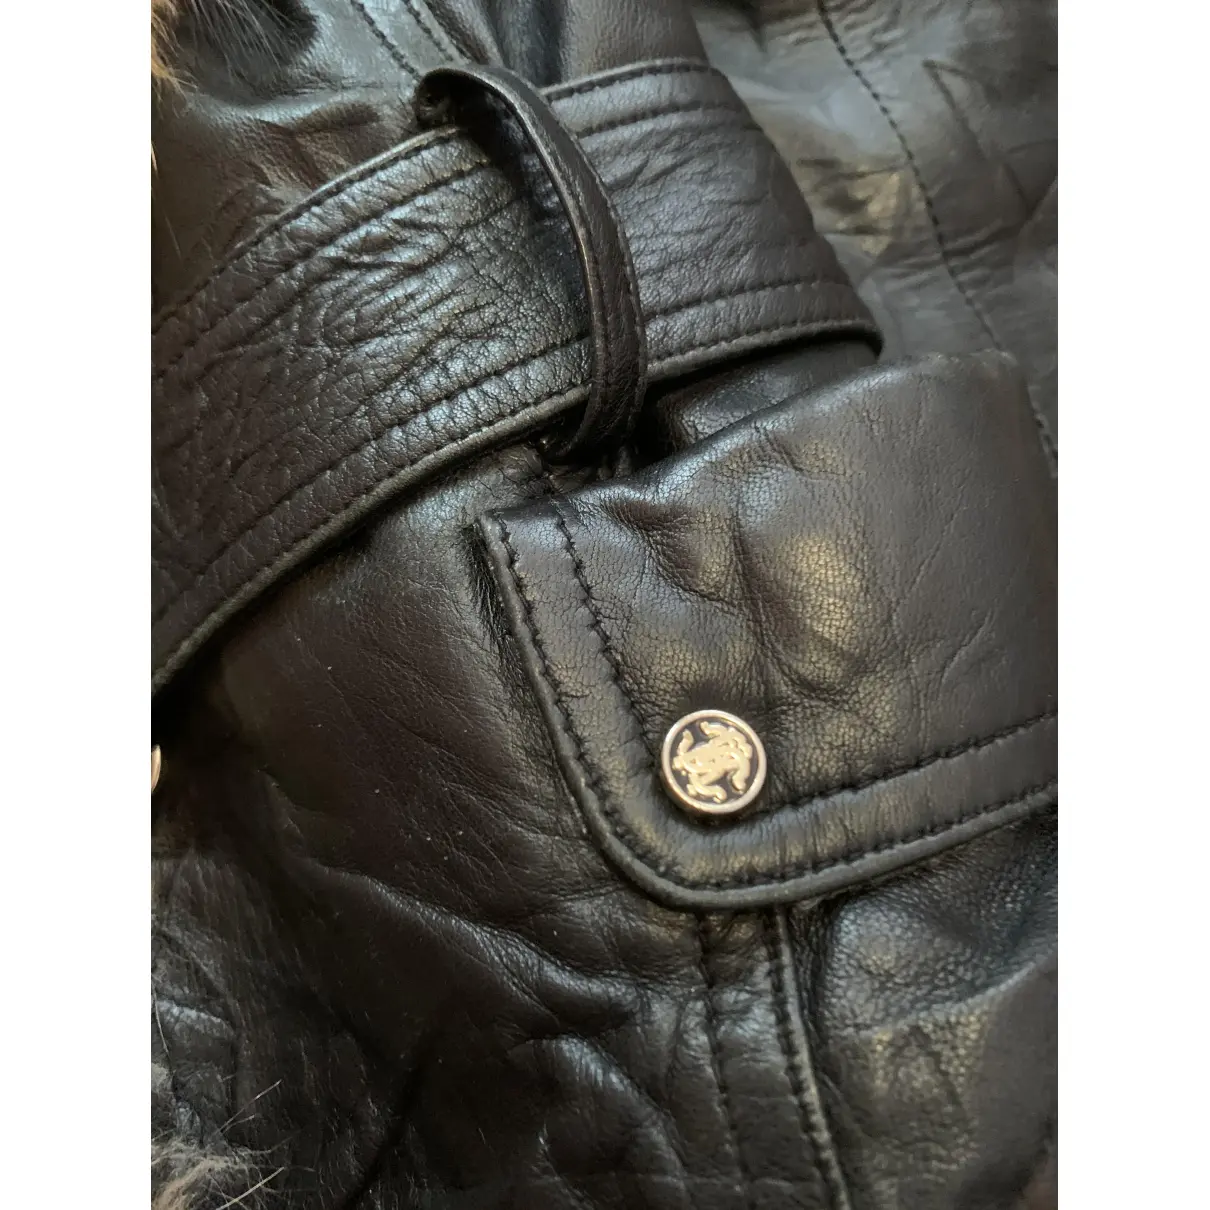 Fox jacket Roberto Cavalli - Vintage